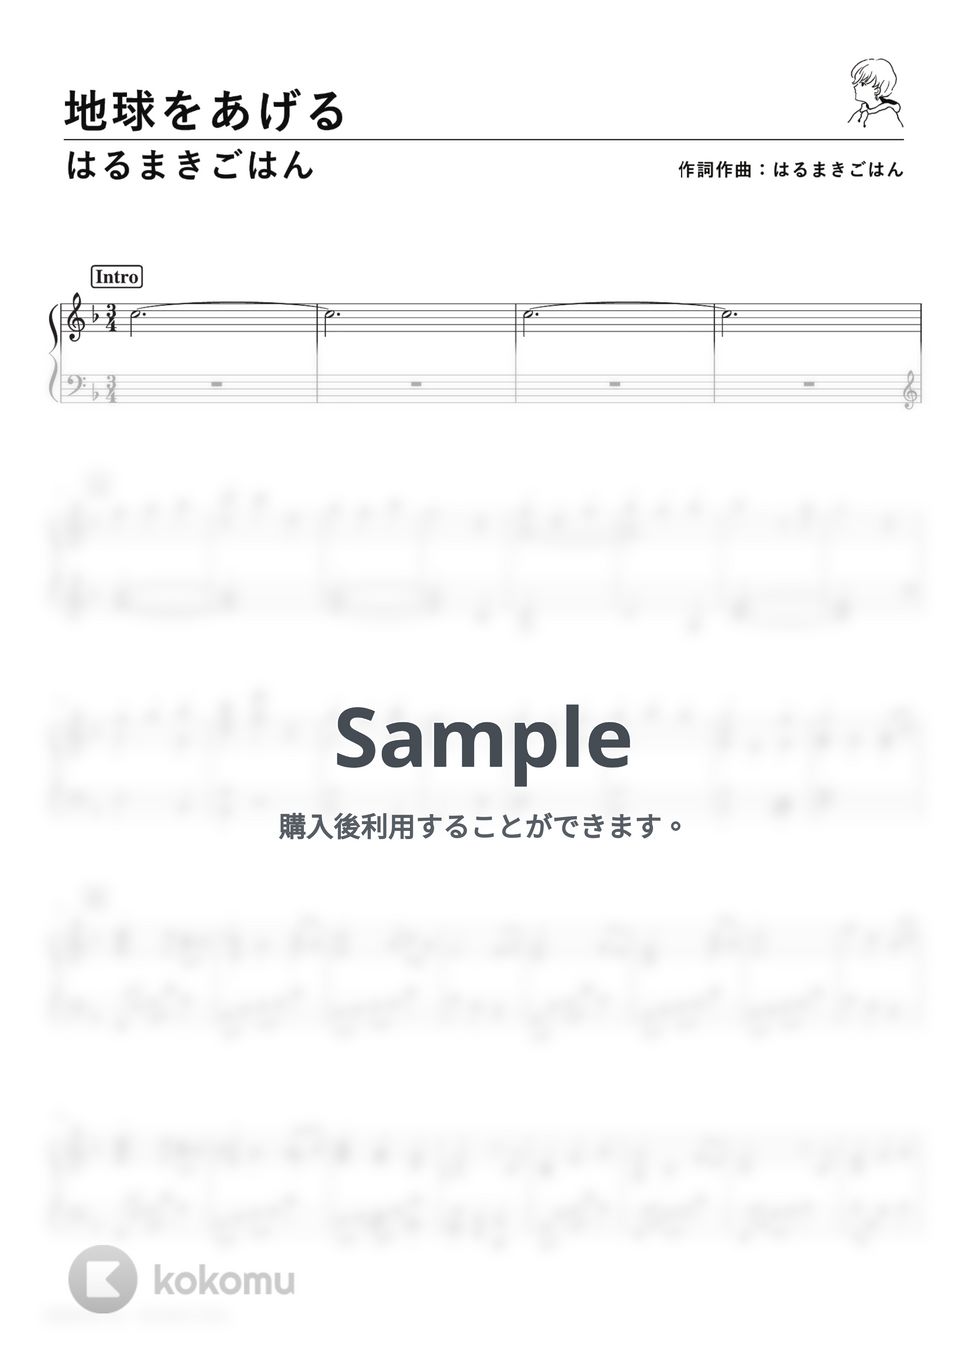 はるまきごはん - 地球をあげる (PianoSolo) by 深根 / Fukane